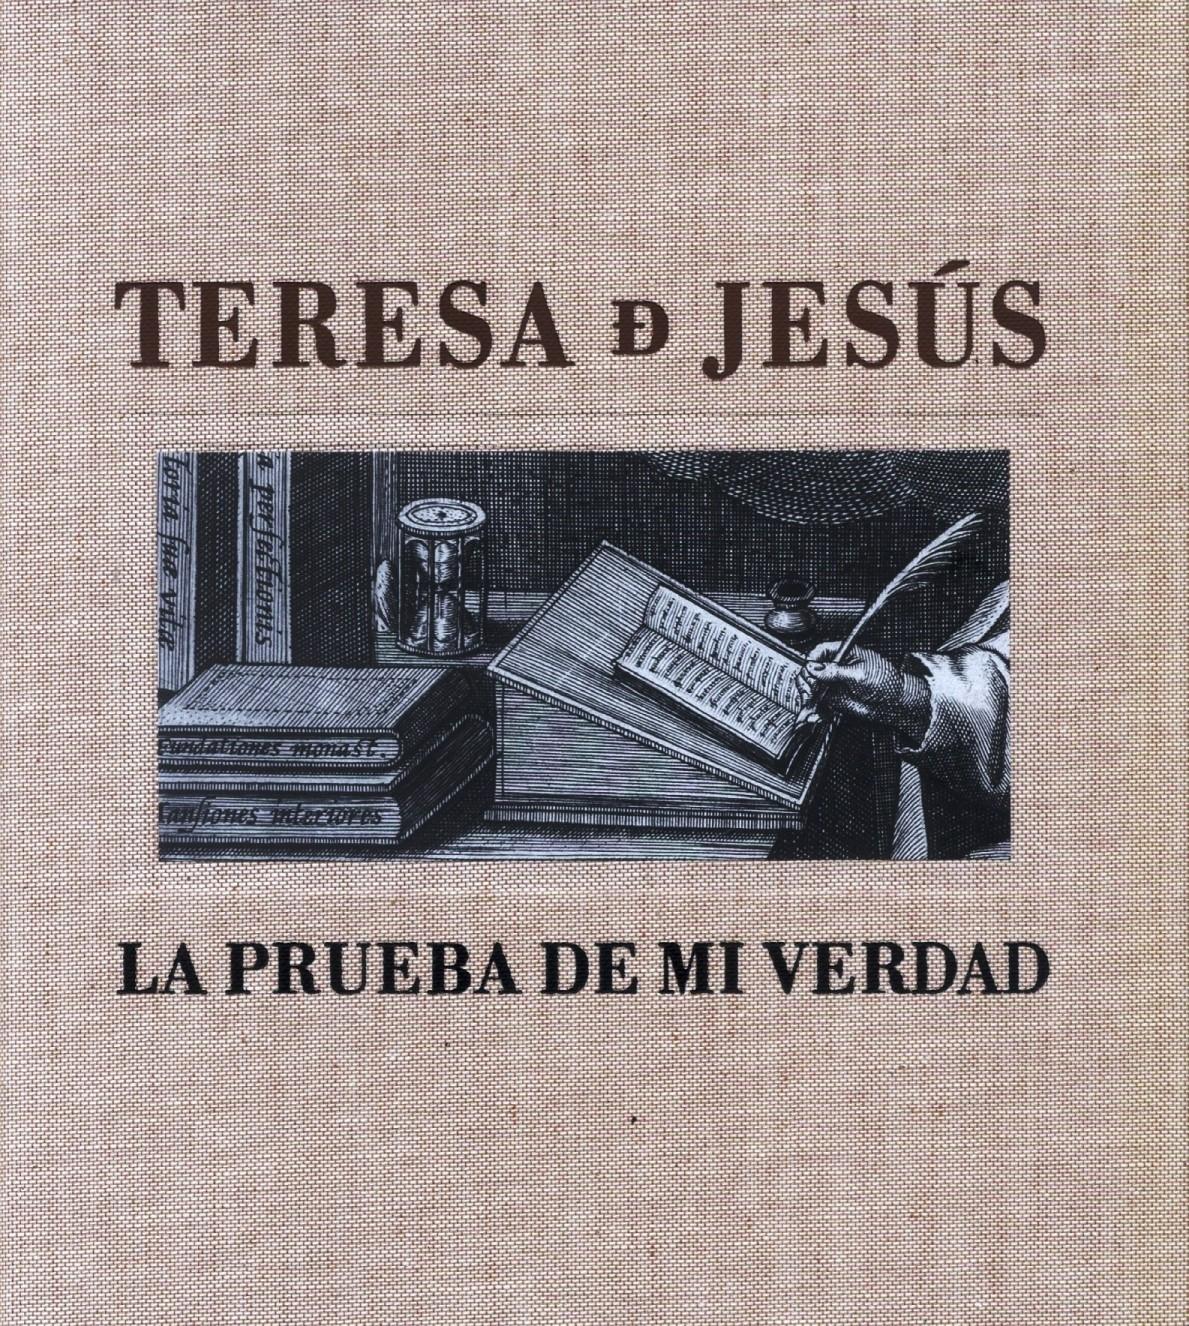 TERESA DE JESÚS "LA PRUEBA DE MI VERDAD"